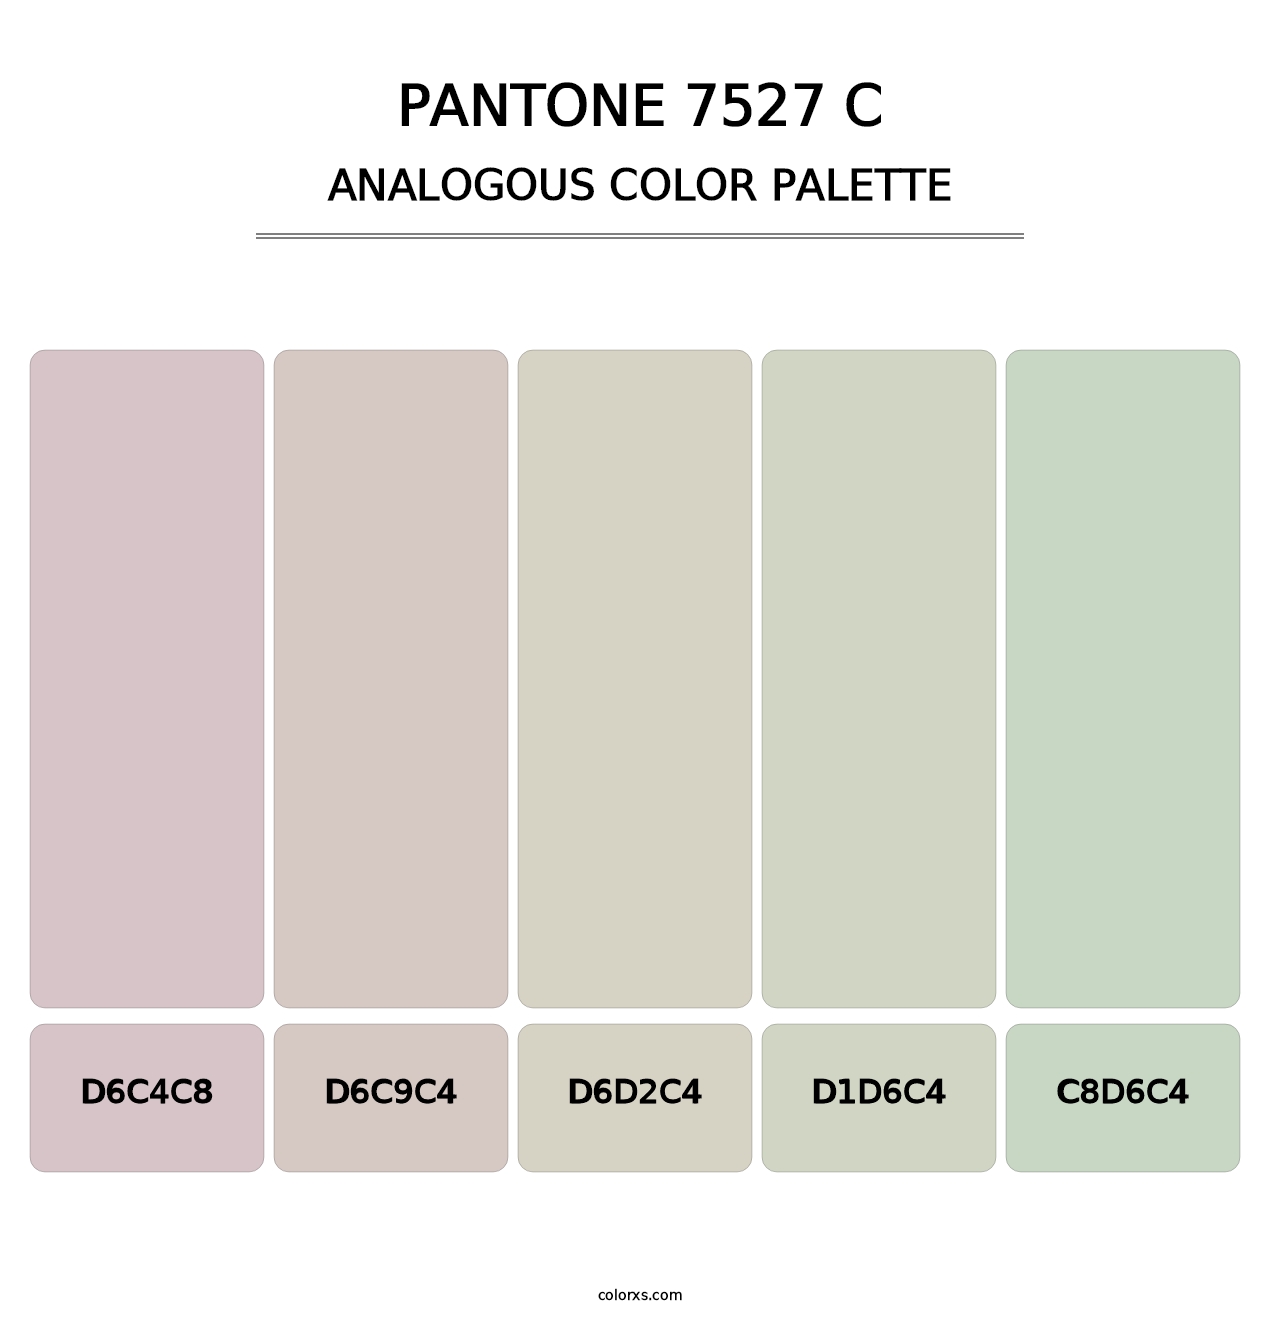 PANTONE 7527 C - Analogous Color Palette